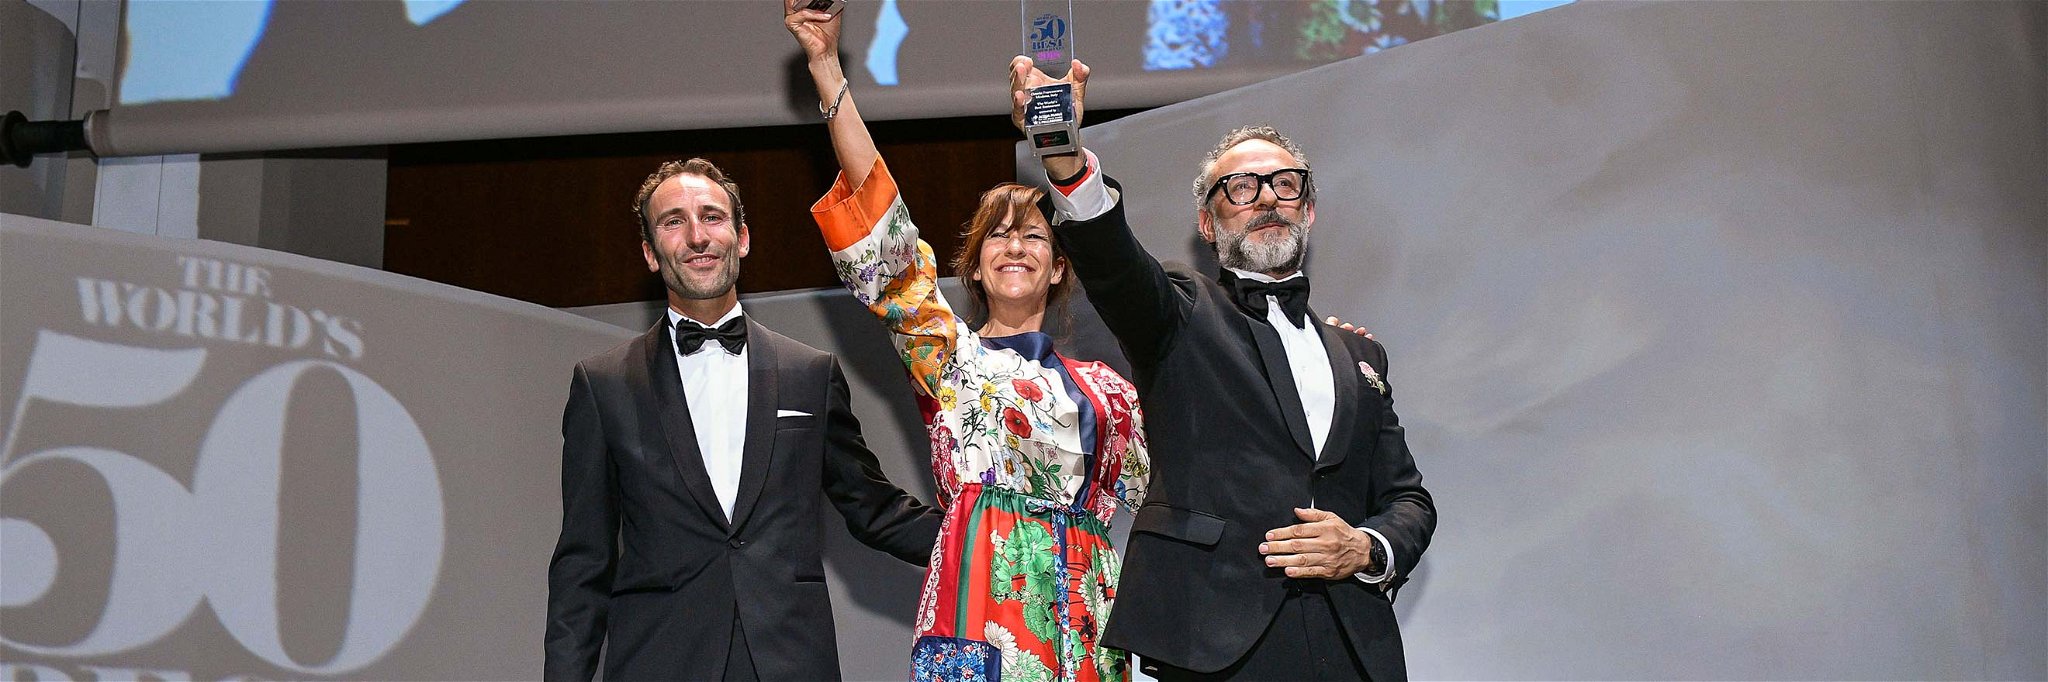 Massimo Bottura feiert die Rückkehr auf Platz 1